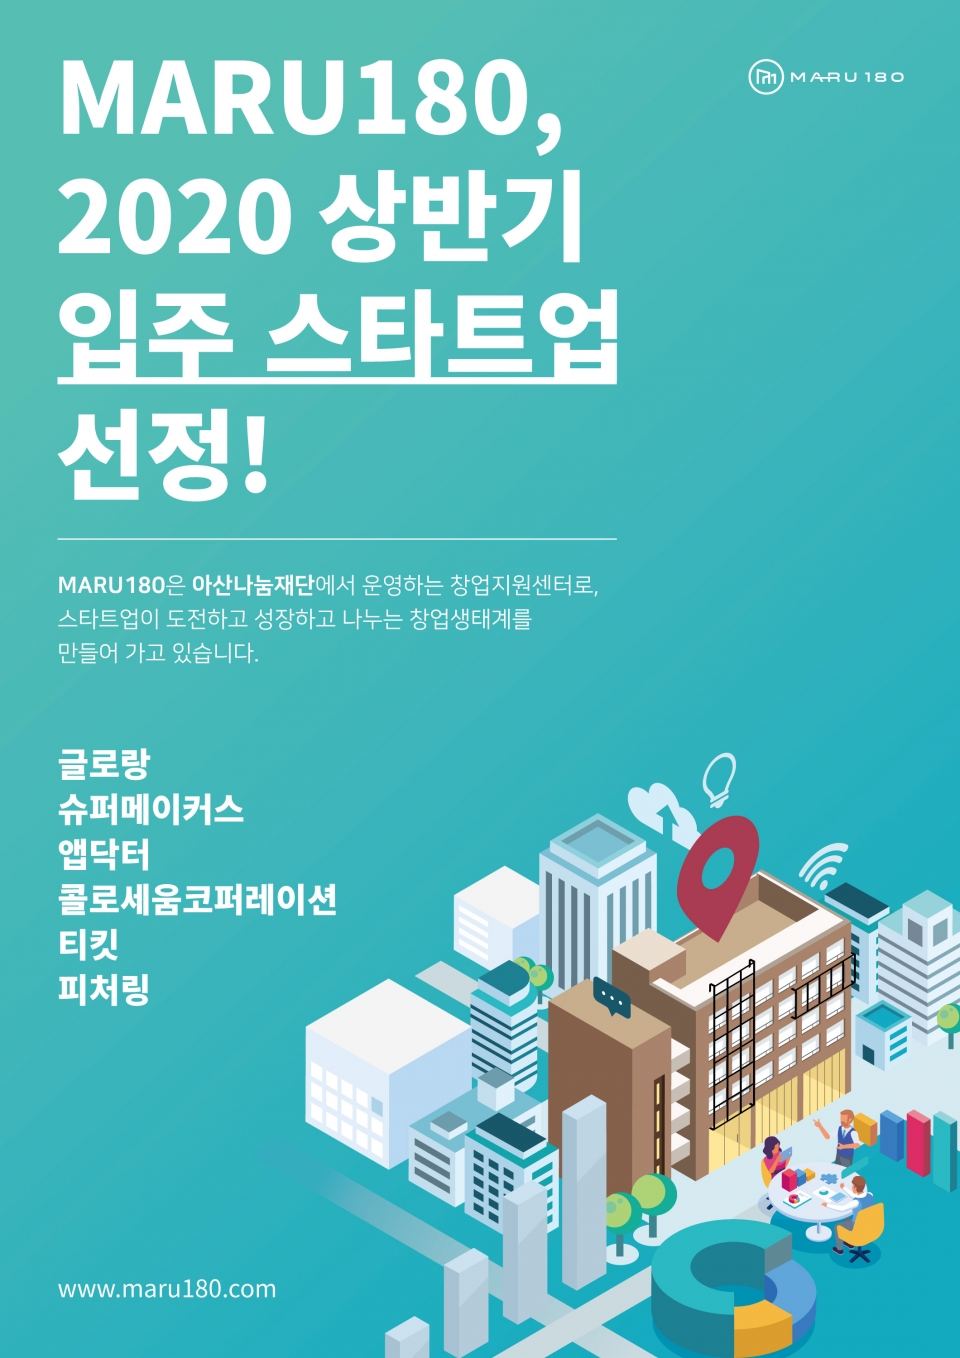 아산나눔재단이 창업지원센터 ‘마루180’ 2020년 상반기 입주 스타트업 6팀을 선정했다. (출처: 아산나눔재단)